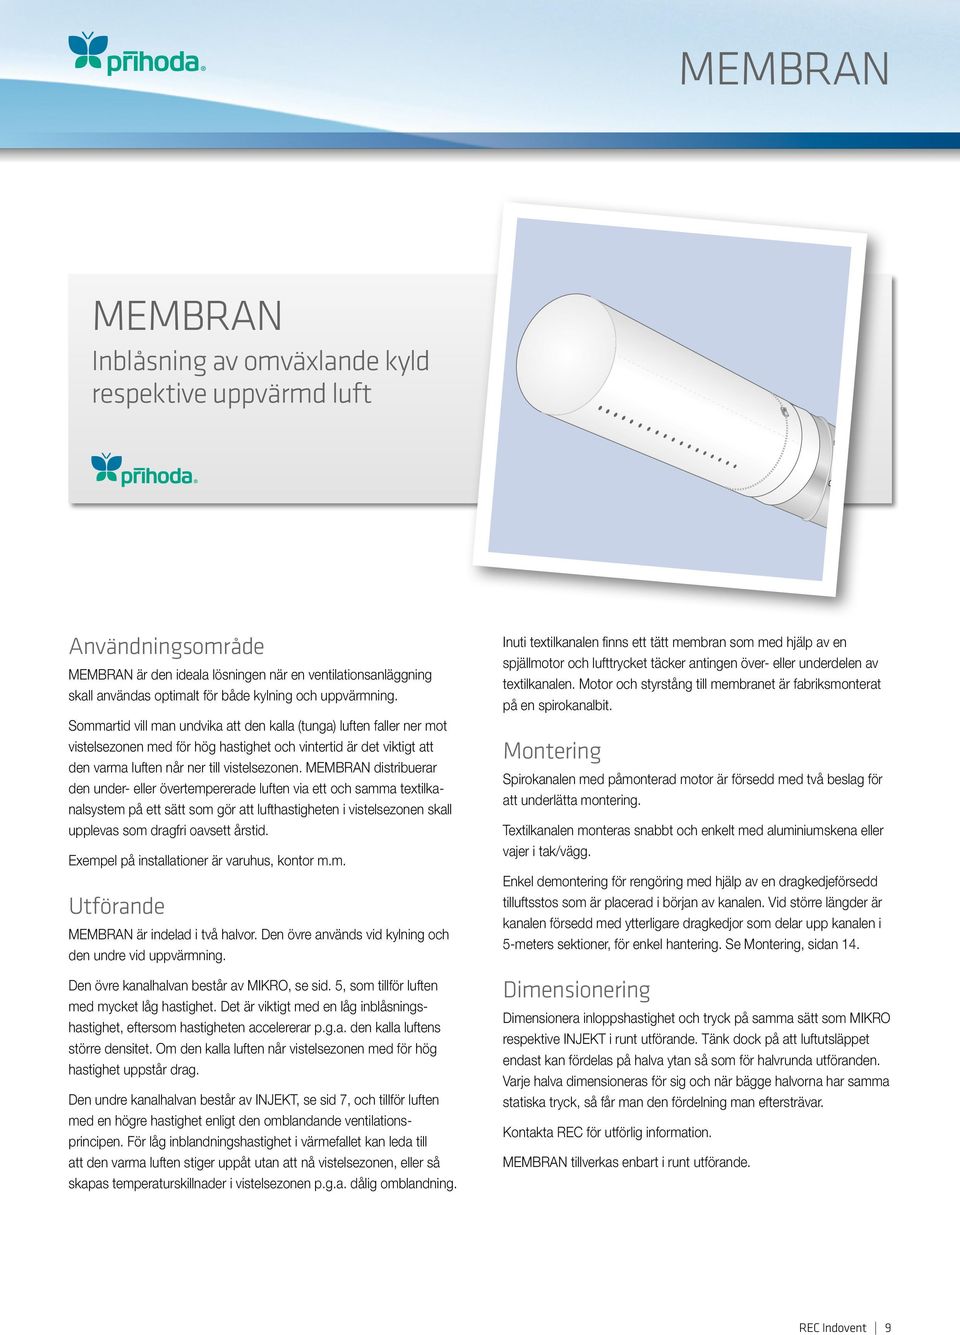 MEMBRAN distribuerar den under- eller övertempererade luften via ett och samma textilkanalsystem på ett sätt som gör att lufthastigheten i vistelsezonen skall upplevas som dragfri oavsett årstid.